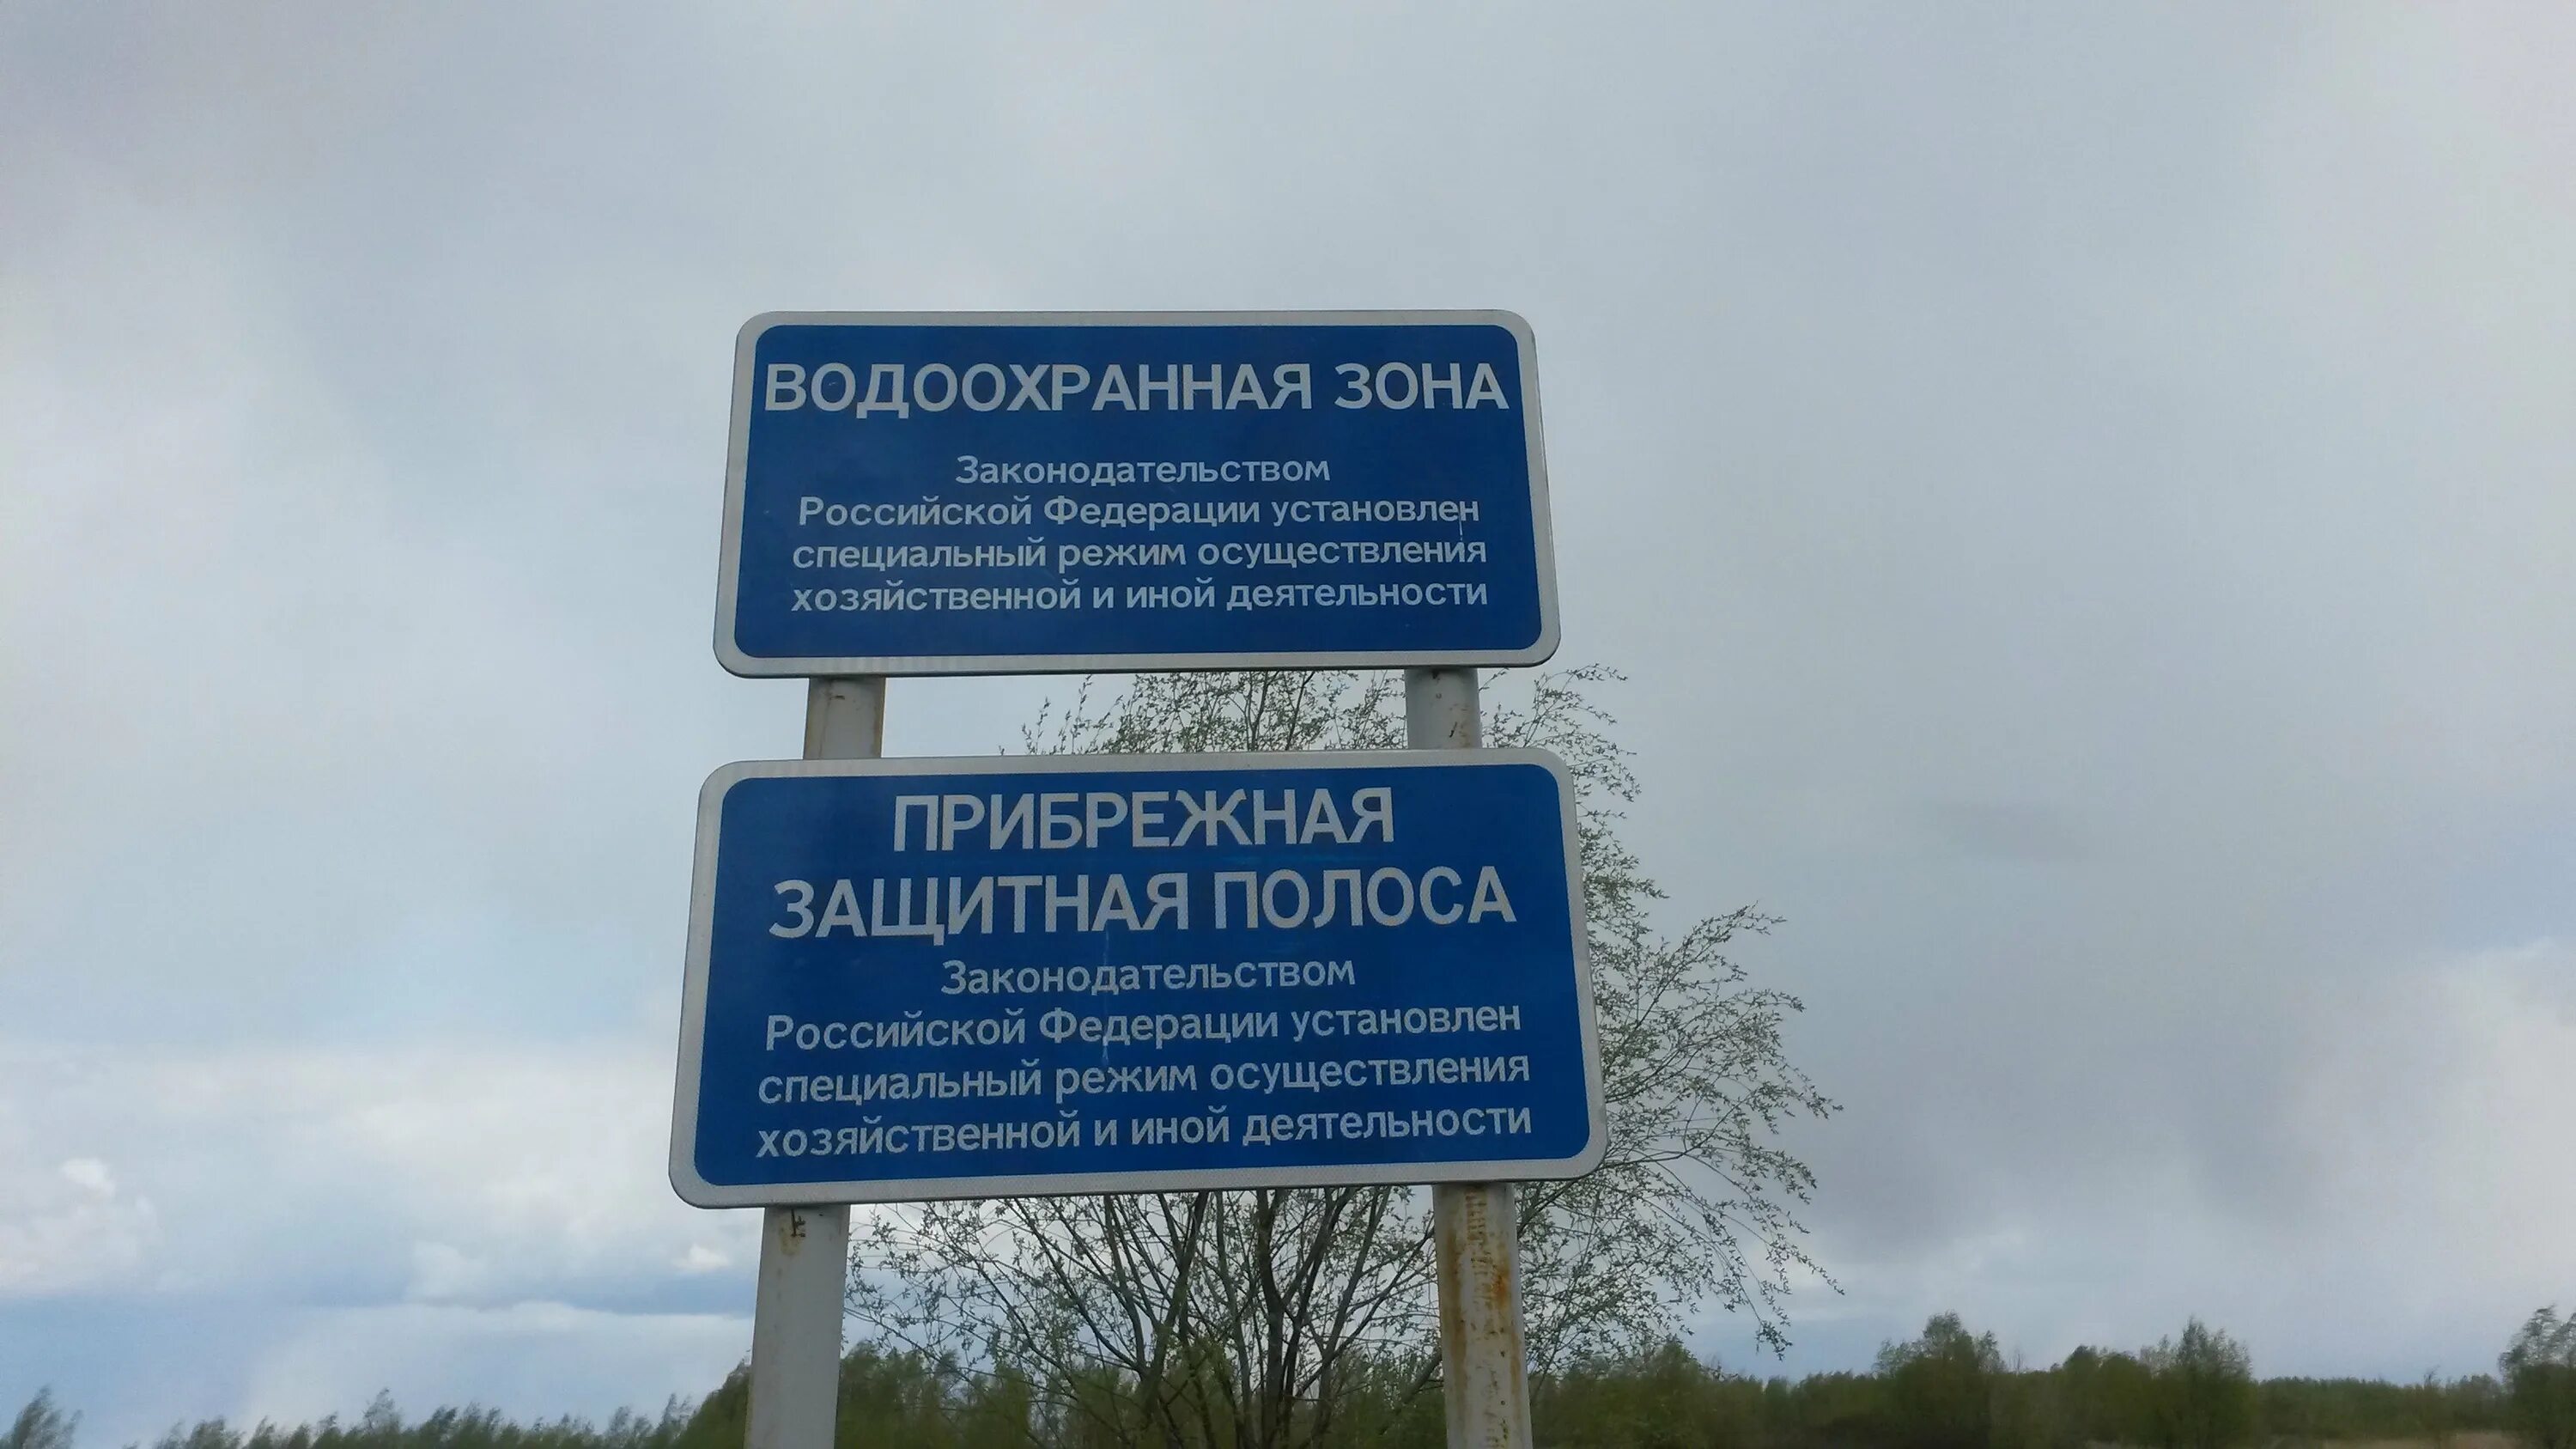 Водоохранная зона что можно. Береговая полоса и водоохранная зона Москвы реки. Знаки водоохранная зона и Прибрежная защитная полоса. Табличка водоохранная зона. Границы водоохранной зоны.